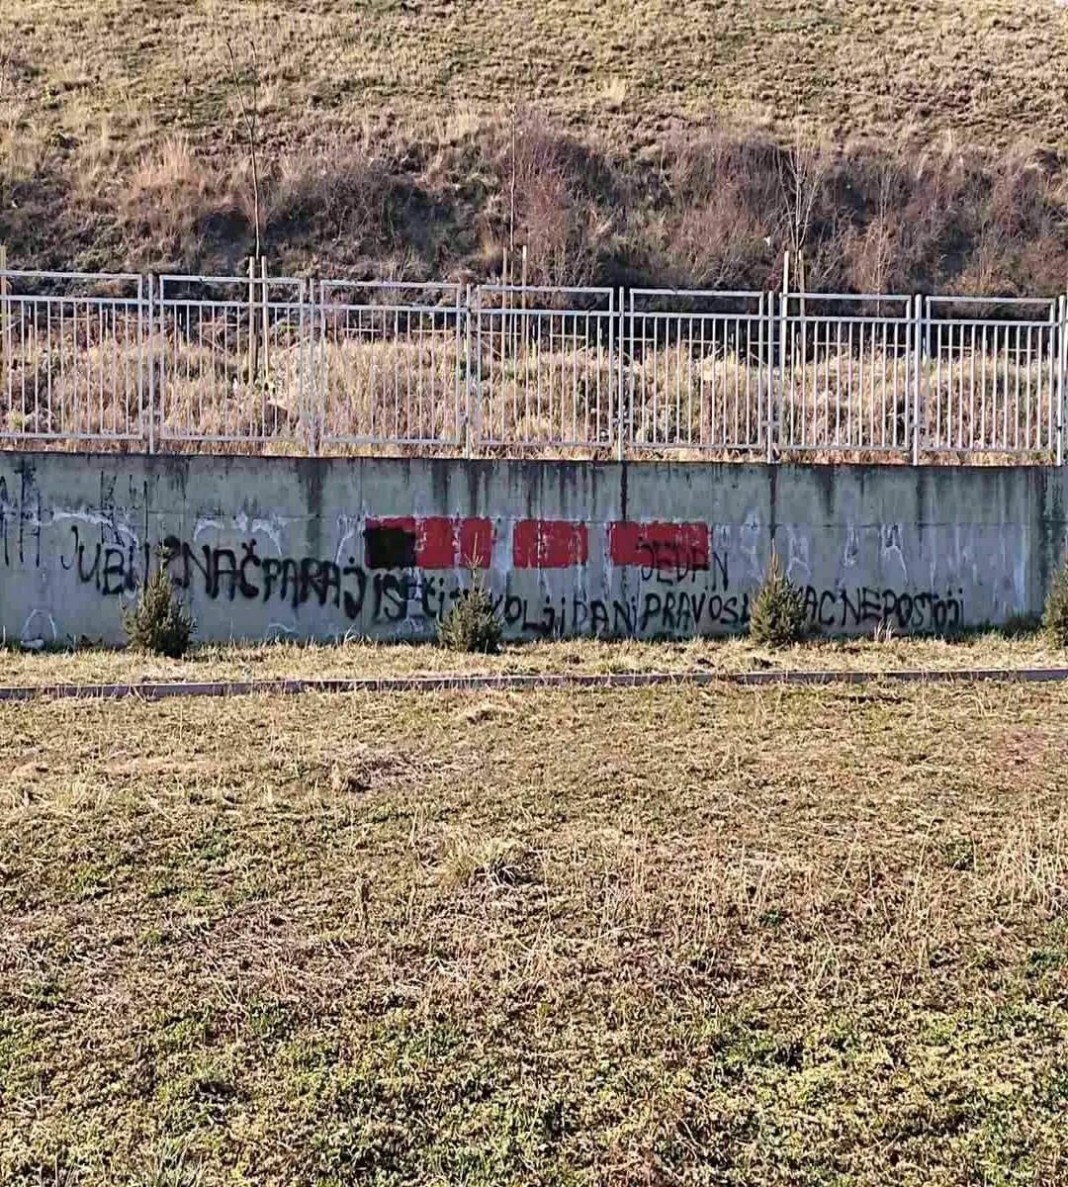 novopazarske-nvo-i-ocd-osudile-sirenje-nacionalne-i-verske-mrznje-putem-grafita